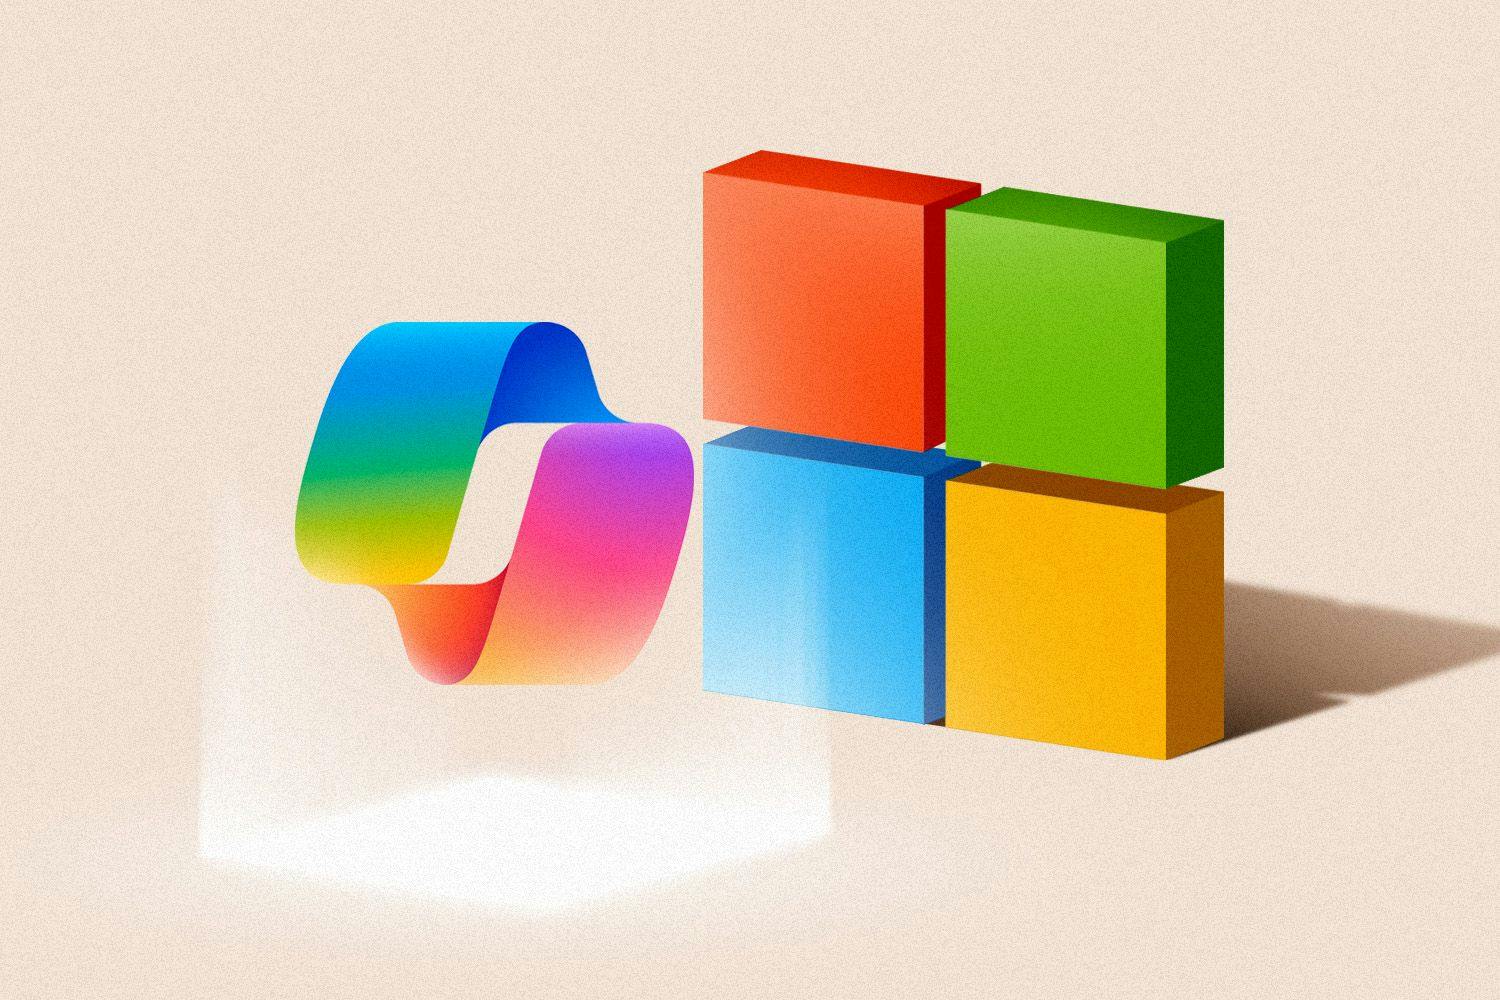 Microsoft and Copilot logos